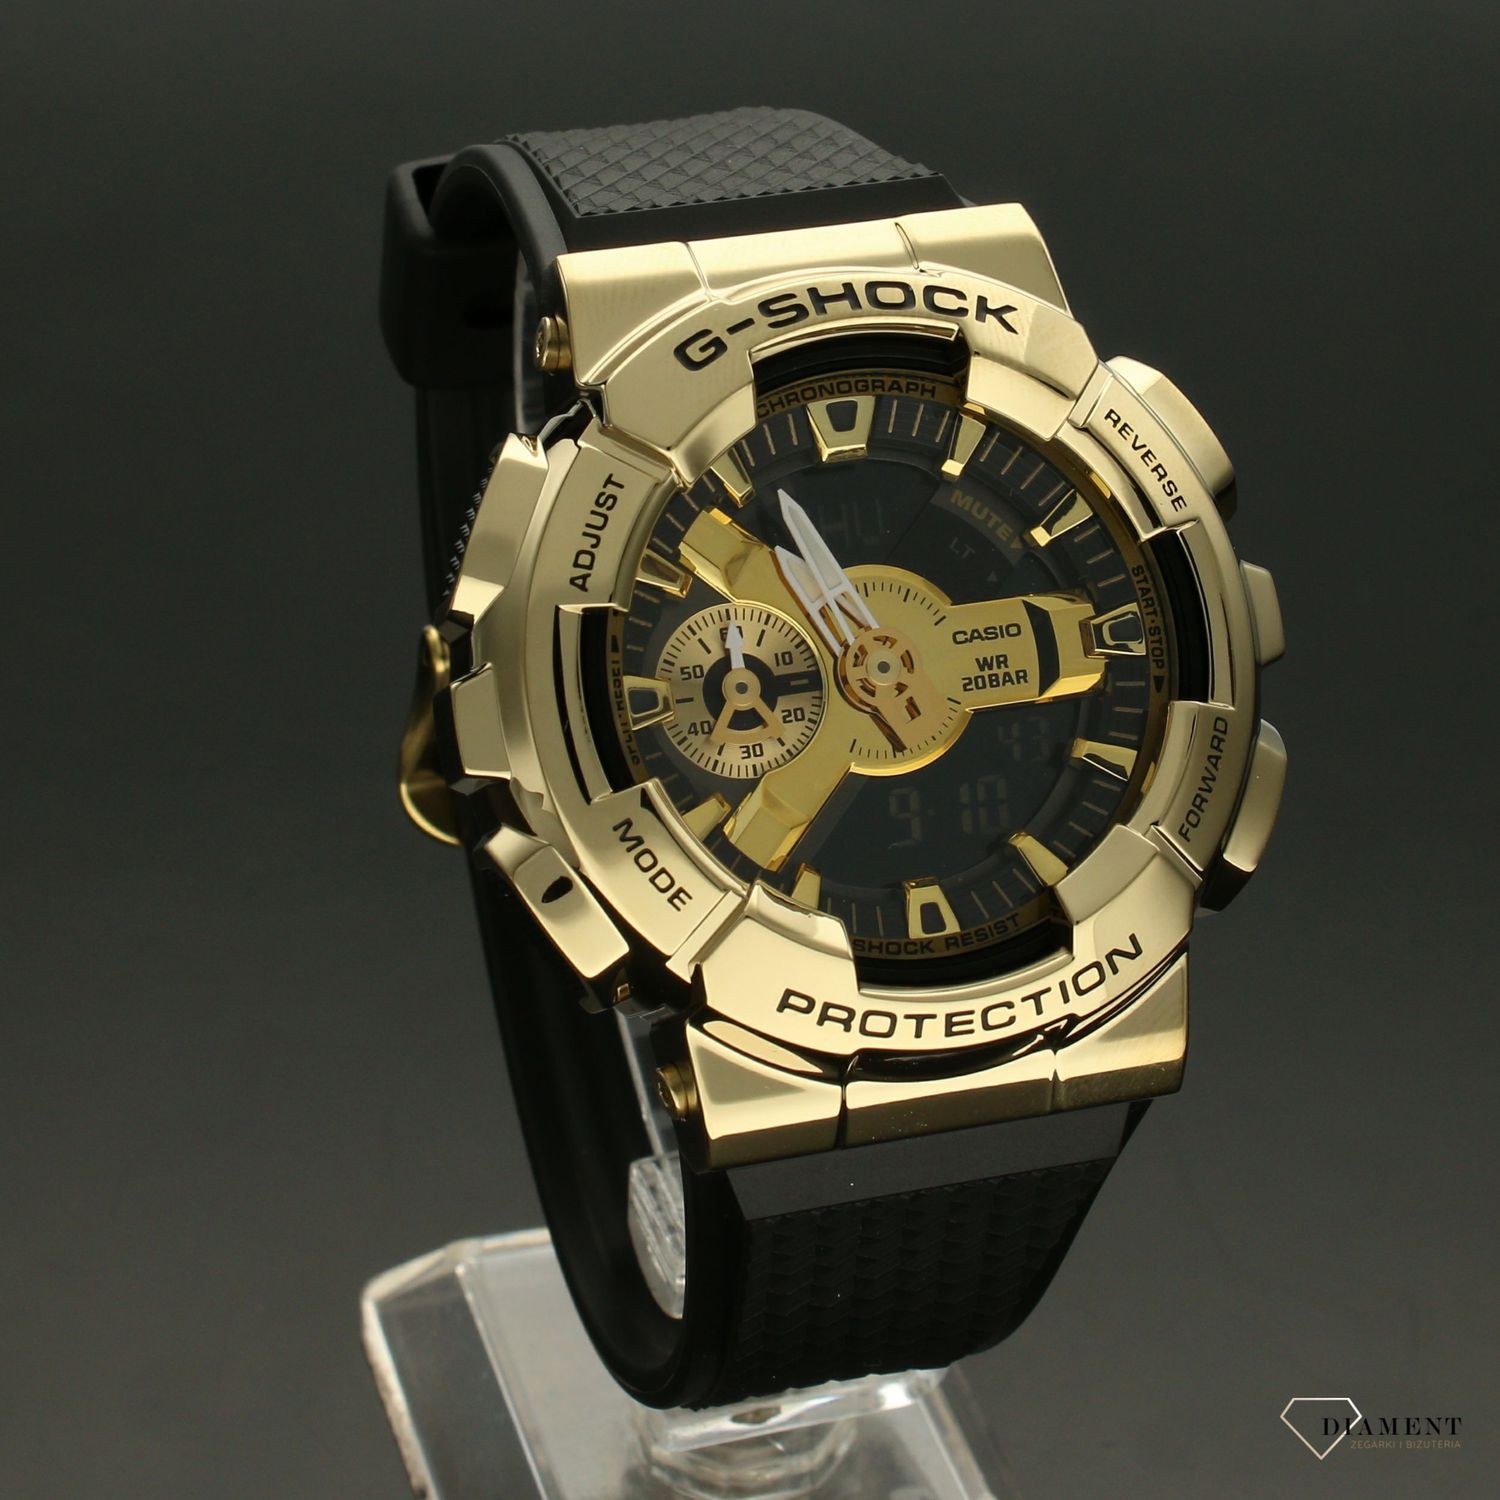 Zegarek Casio G-shock złoto-czarny GM-110G-1A9ER - www.zegarki-diament.pl